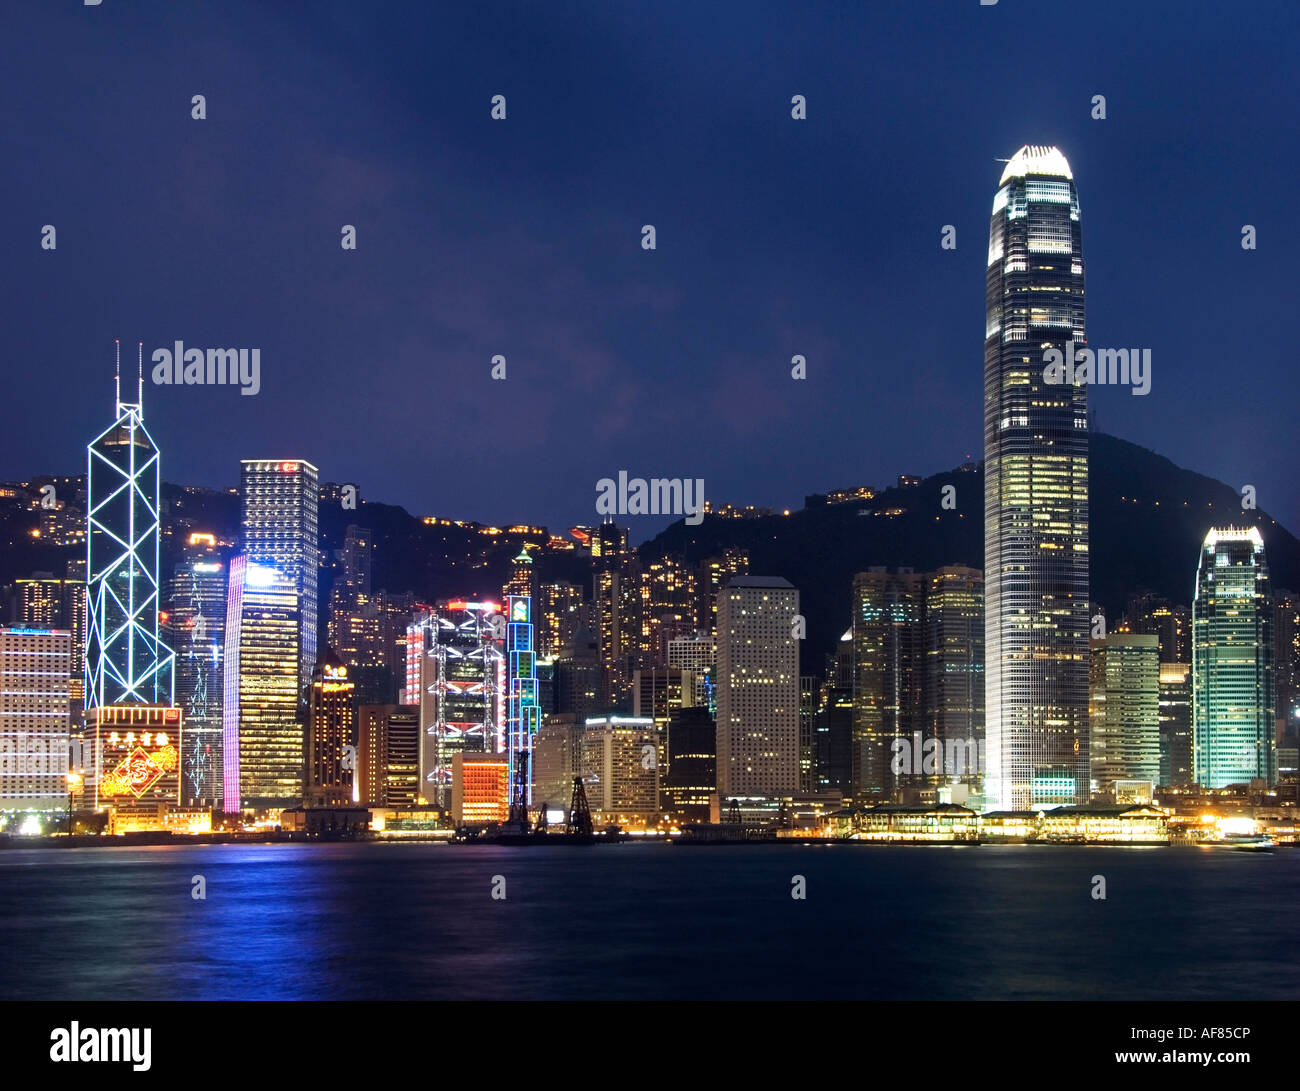 Vue nocturne de la célèbre ligne d'horizon de Hong Kong vu depuis le côté est du port de Kowloon, Hong Kong, Chine, Asie Banque D'Images